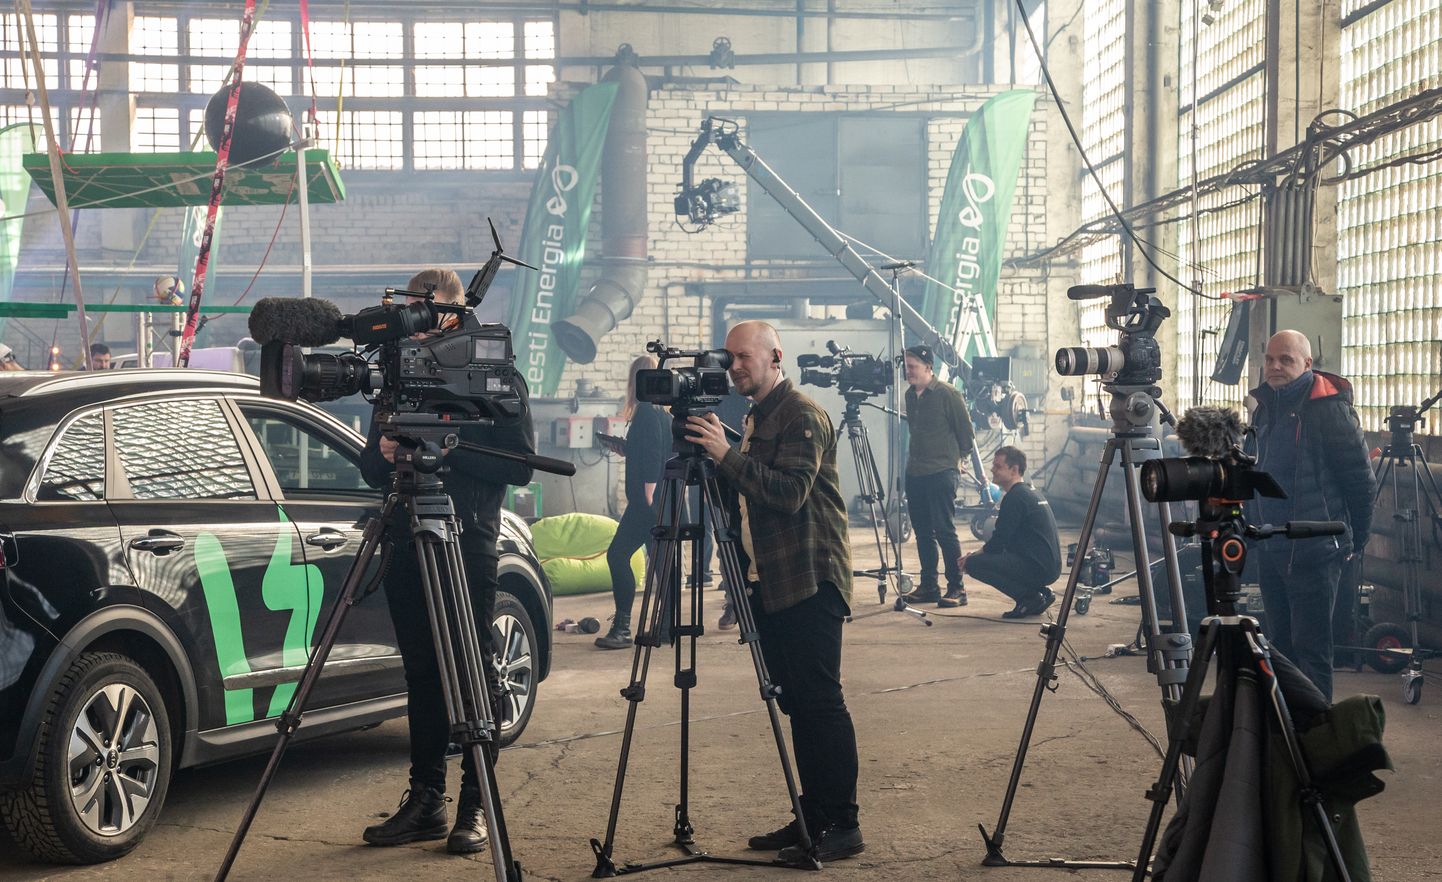 Расположенное в Йыхви производственное здание на несколько дней превратилось как бы в кинопавильон, где более десяти камер вели съемку финальной передачи "Rakett 69".